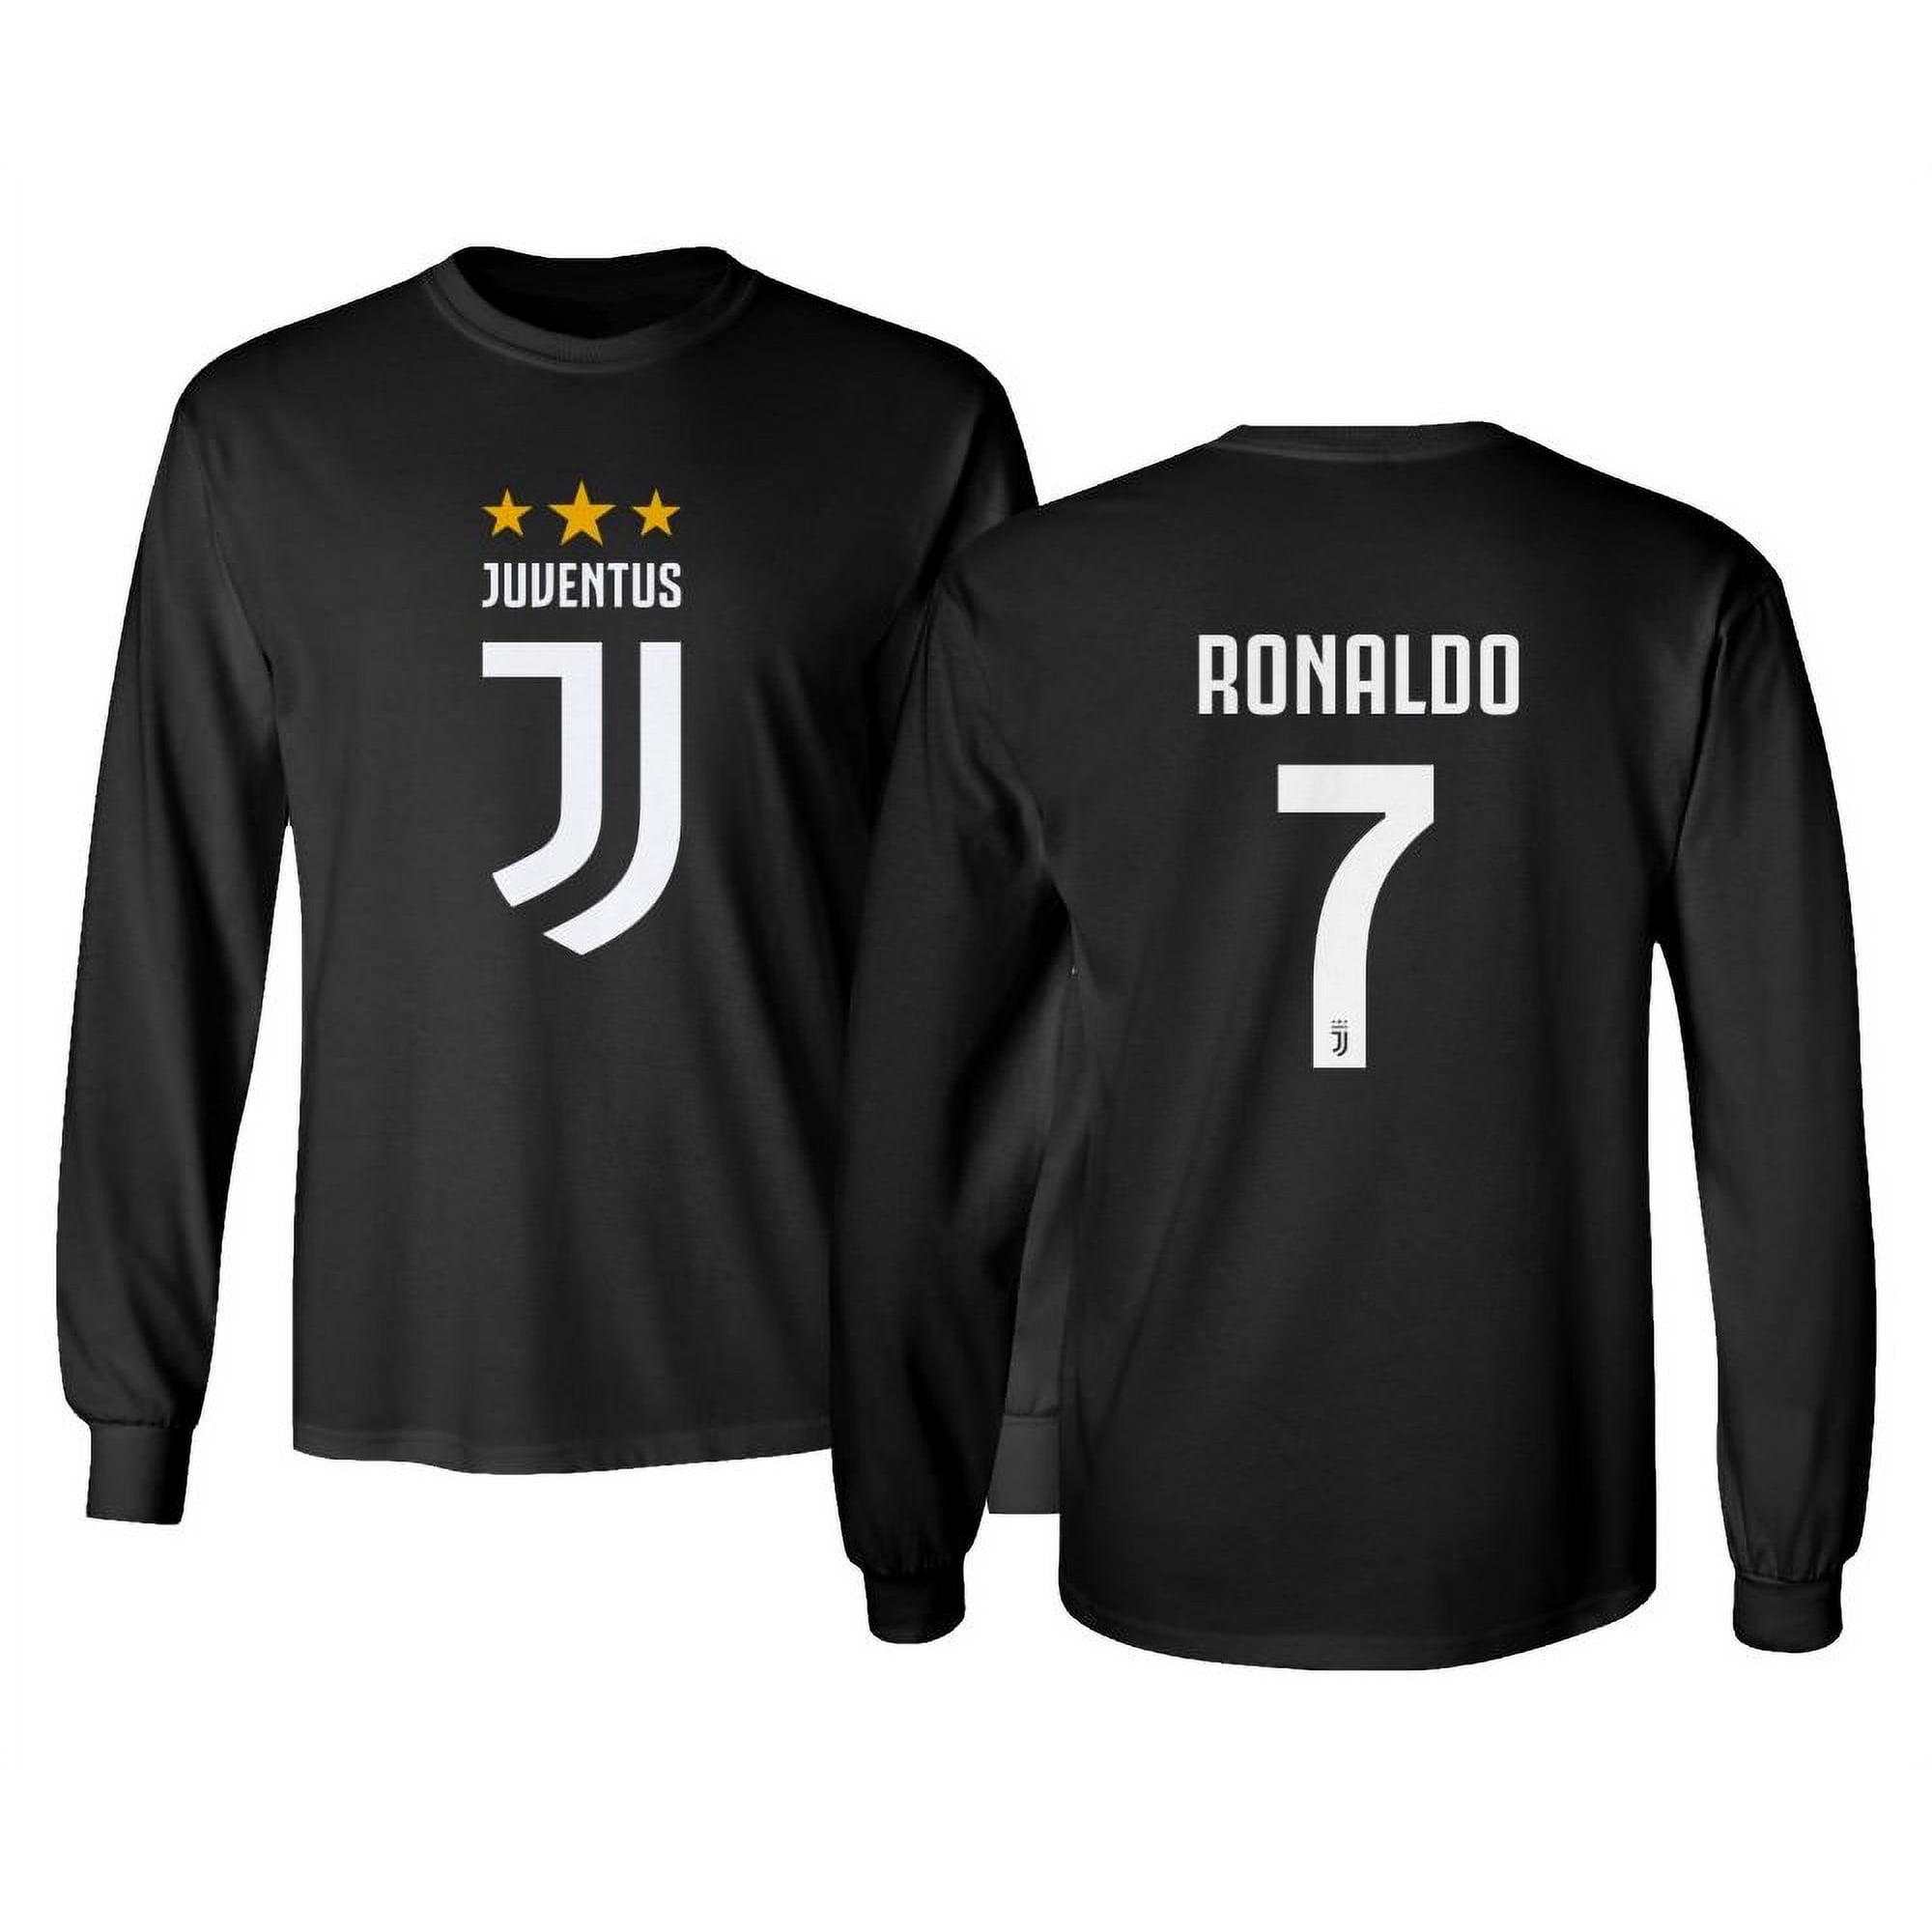 ronaldo jersey for men